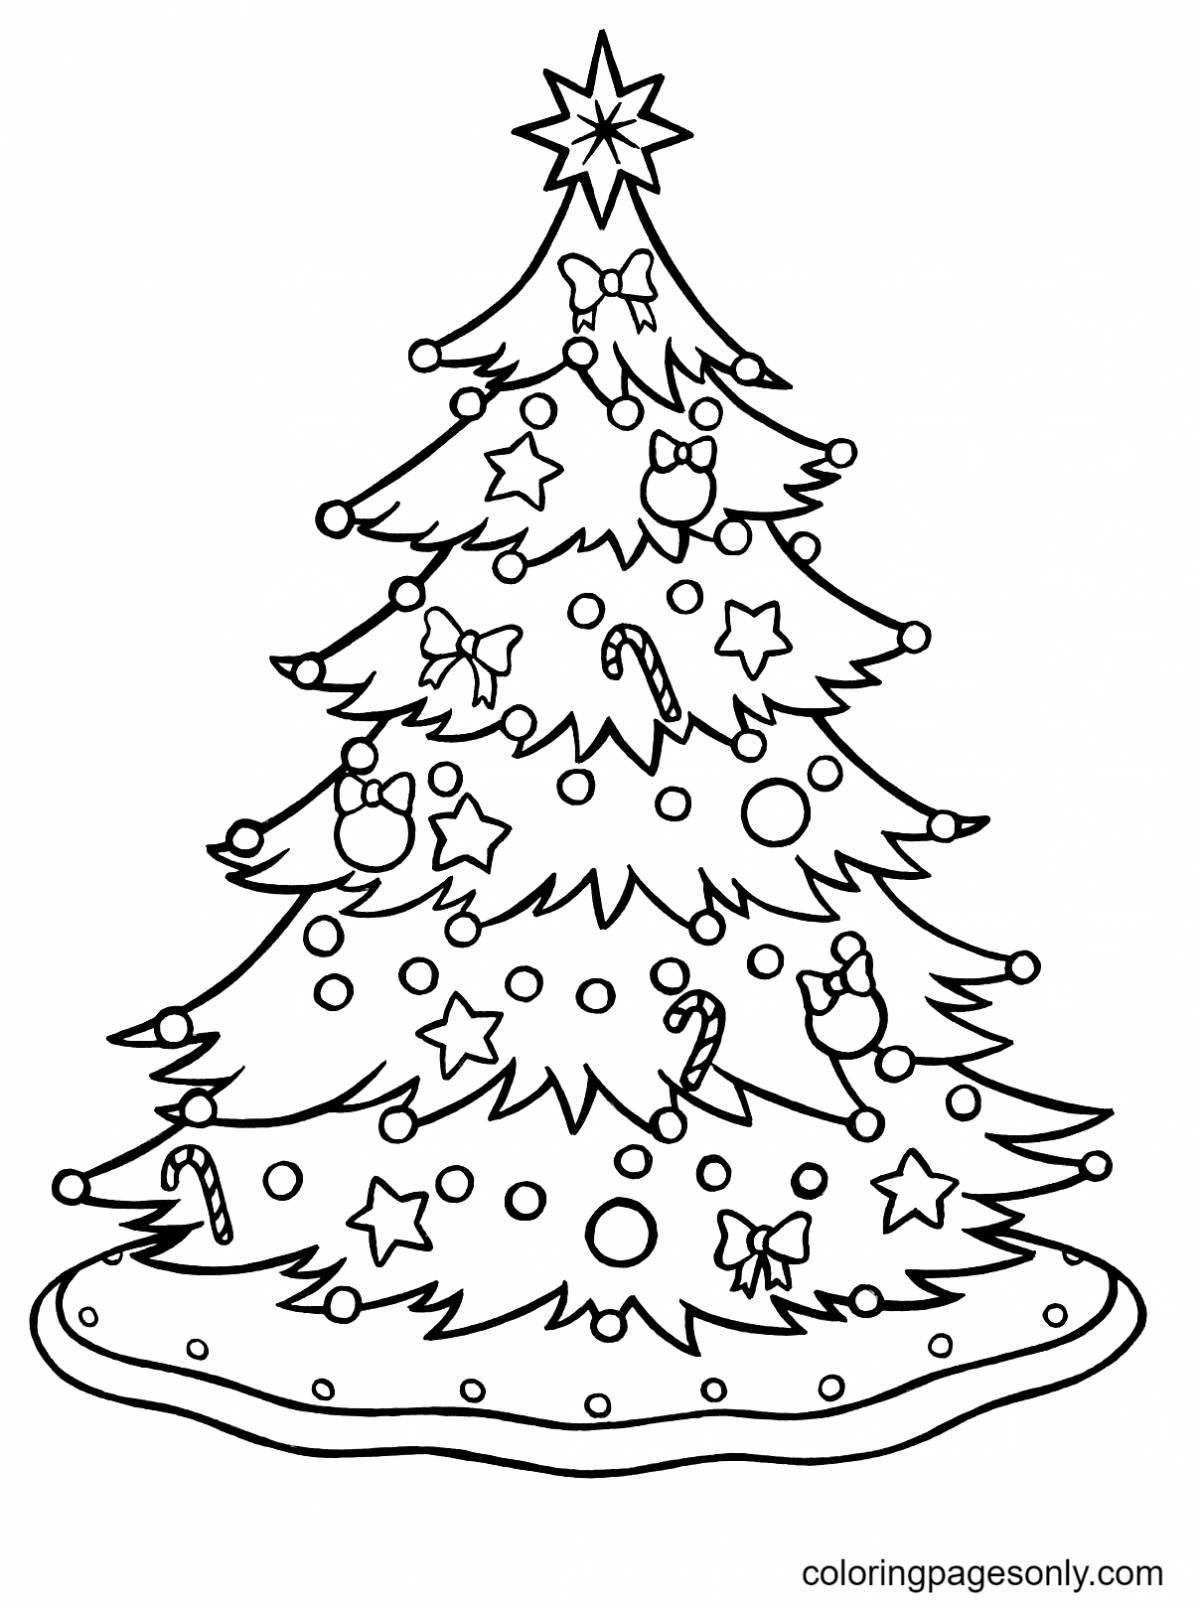 Раскраска радостная новогодняя елка для детей